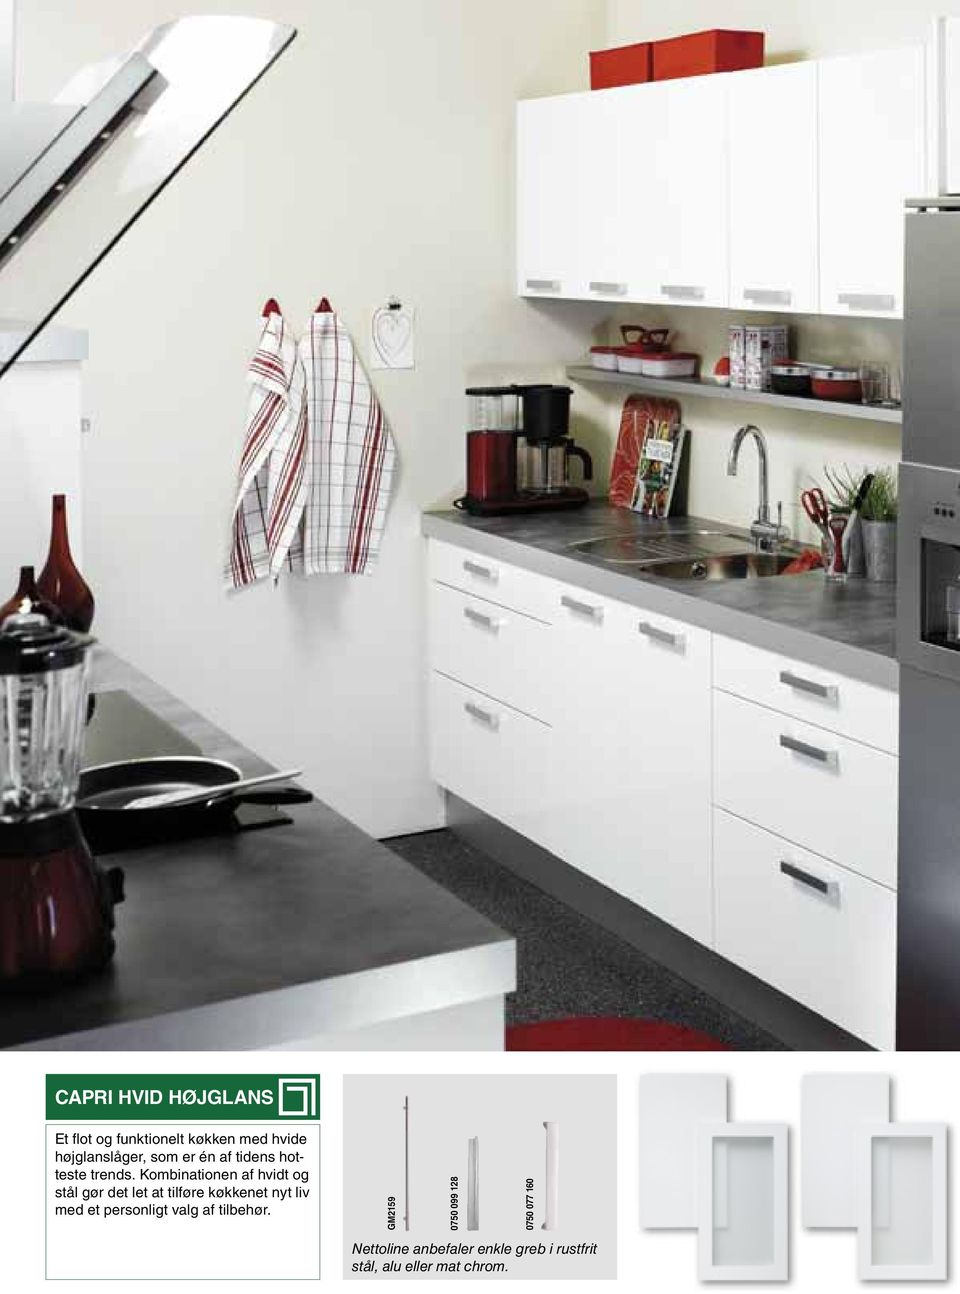 Kombinationen af hvidt og stål gør det let at tilføre køkkenet nyt liv med et